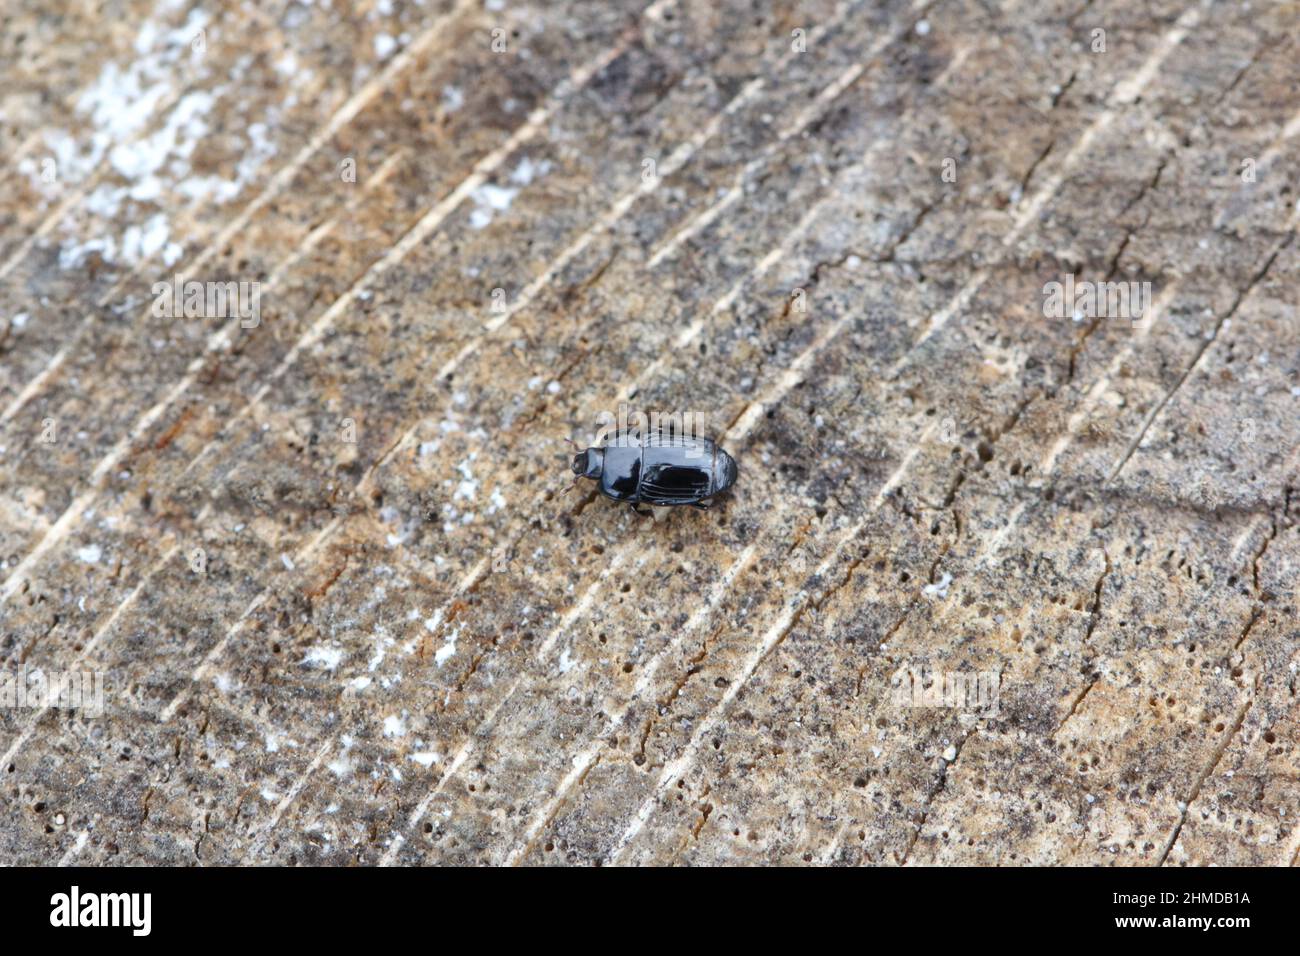 Ein kleiner Käfer der Familie Histeridae, der allgemein als Clownkäfer oder Hister bekannt ist, Käfer auf Holz. Stockfoto